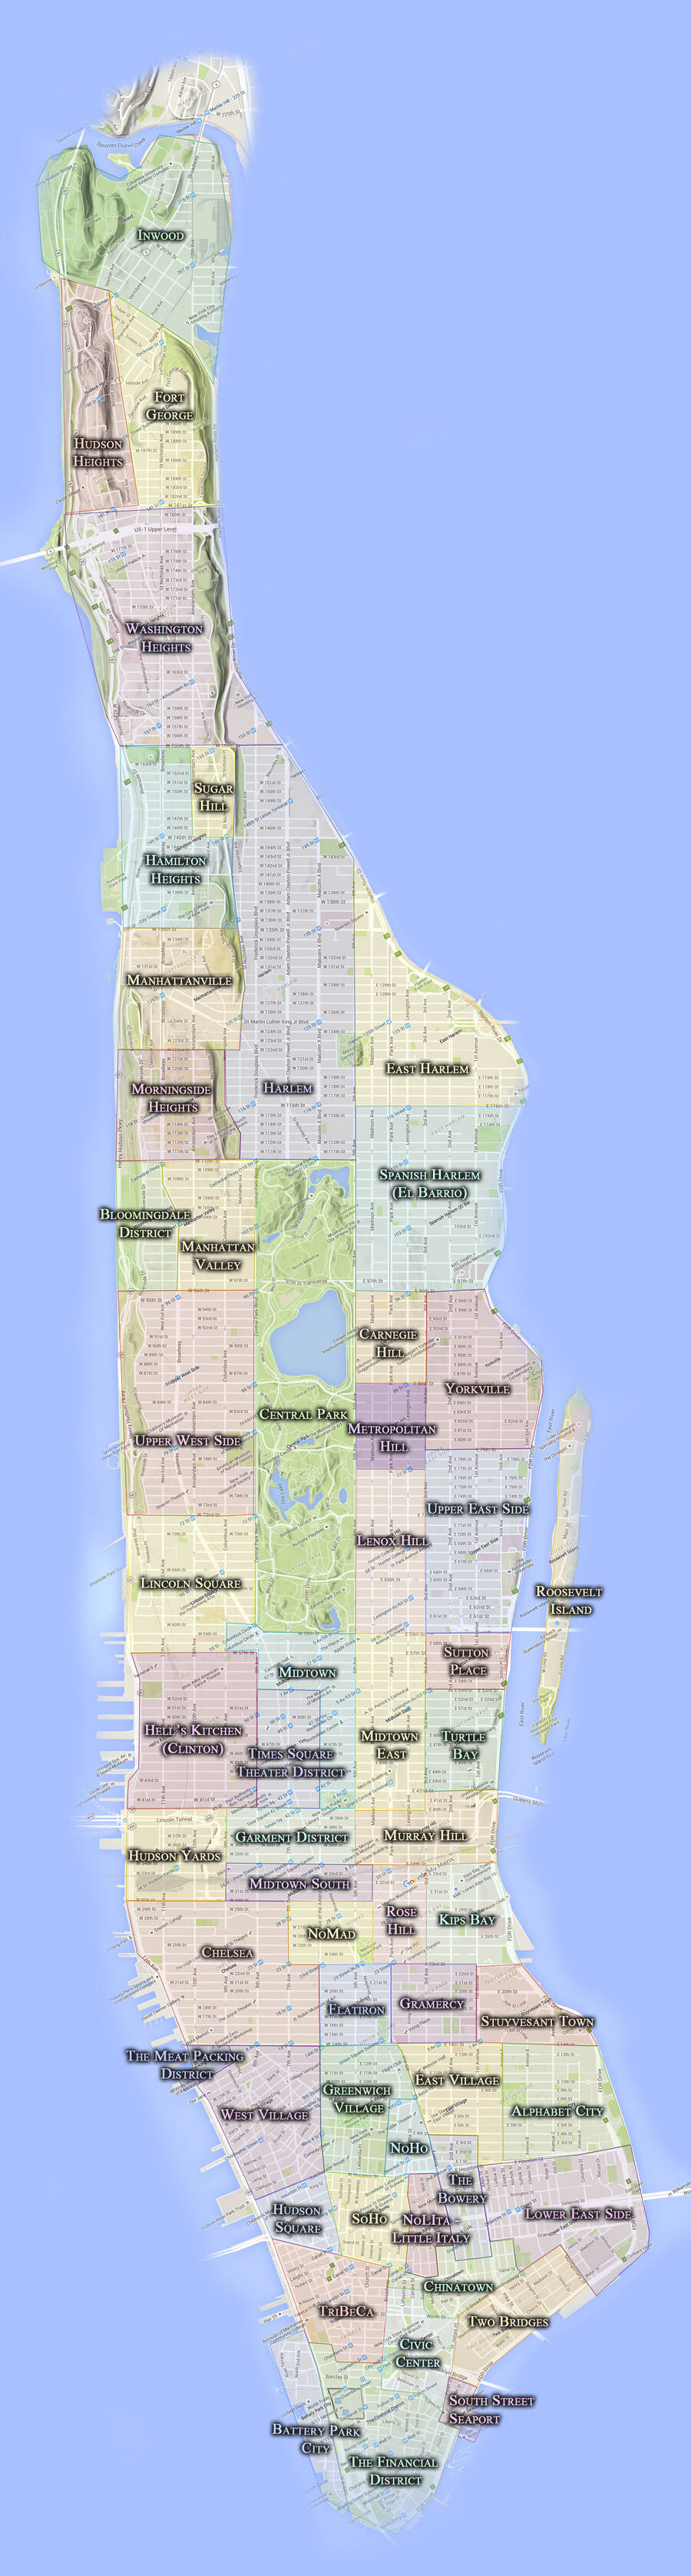 Manhattan neighborhoods map, the coolest neighborhoods in nyc